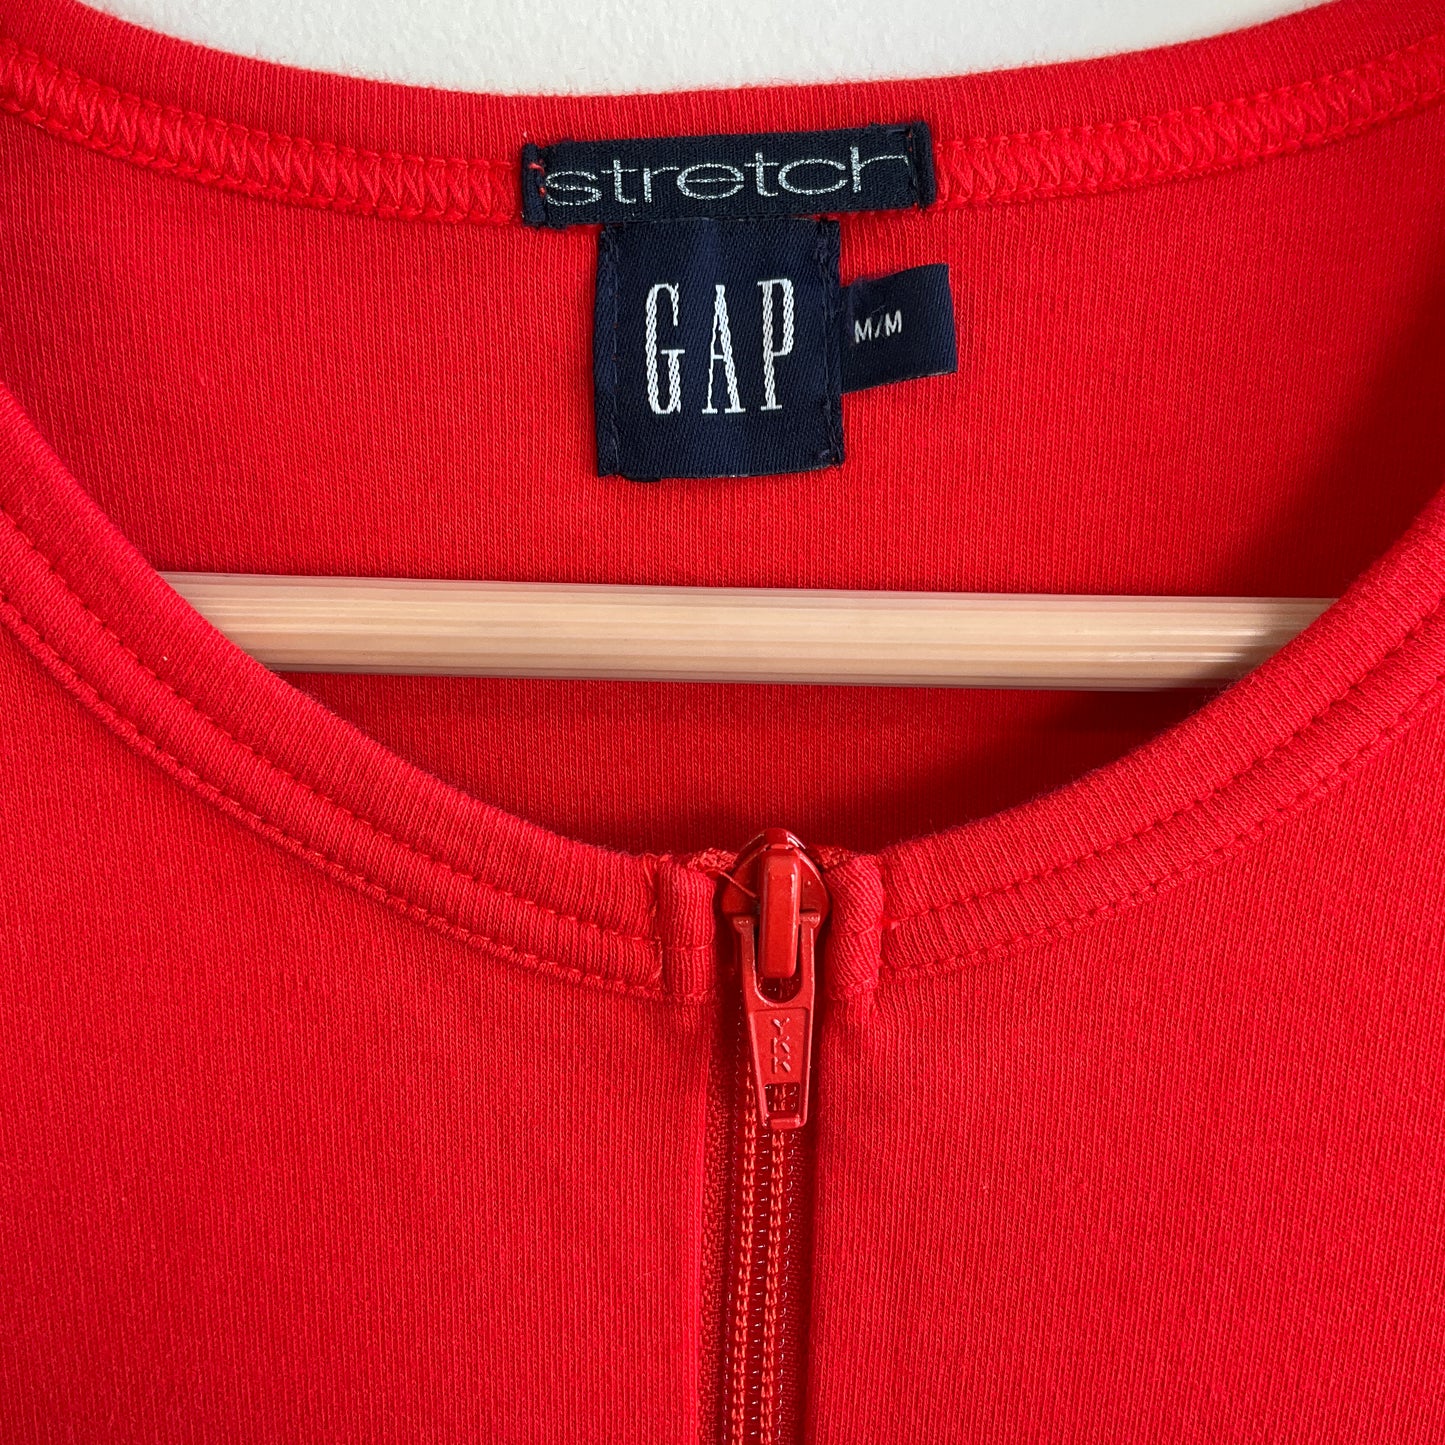 Gap - Stretch Fabric Top